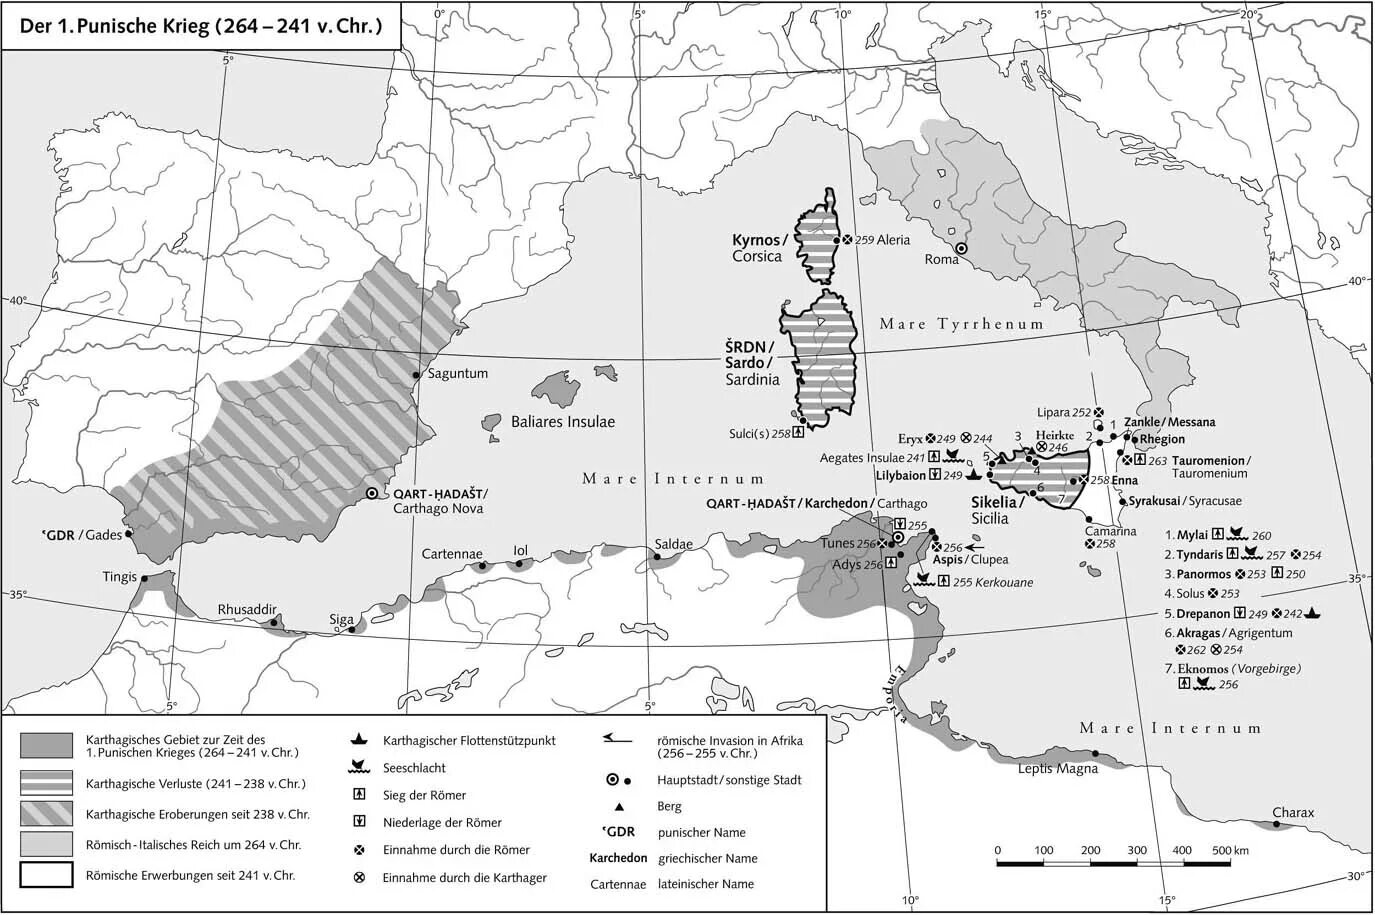 Территория карфагена к началу 1 пунической войны